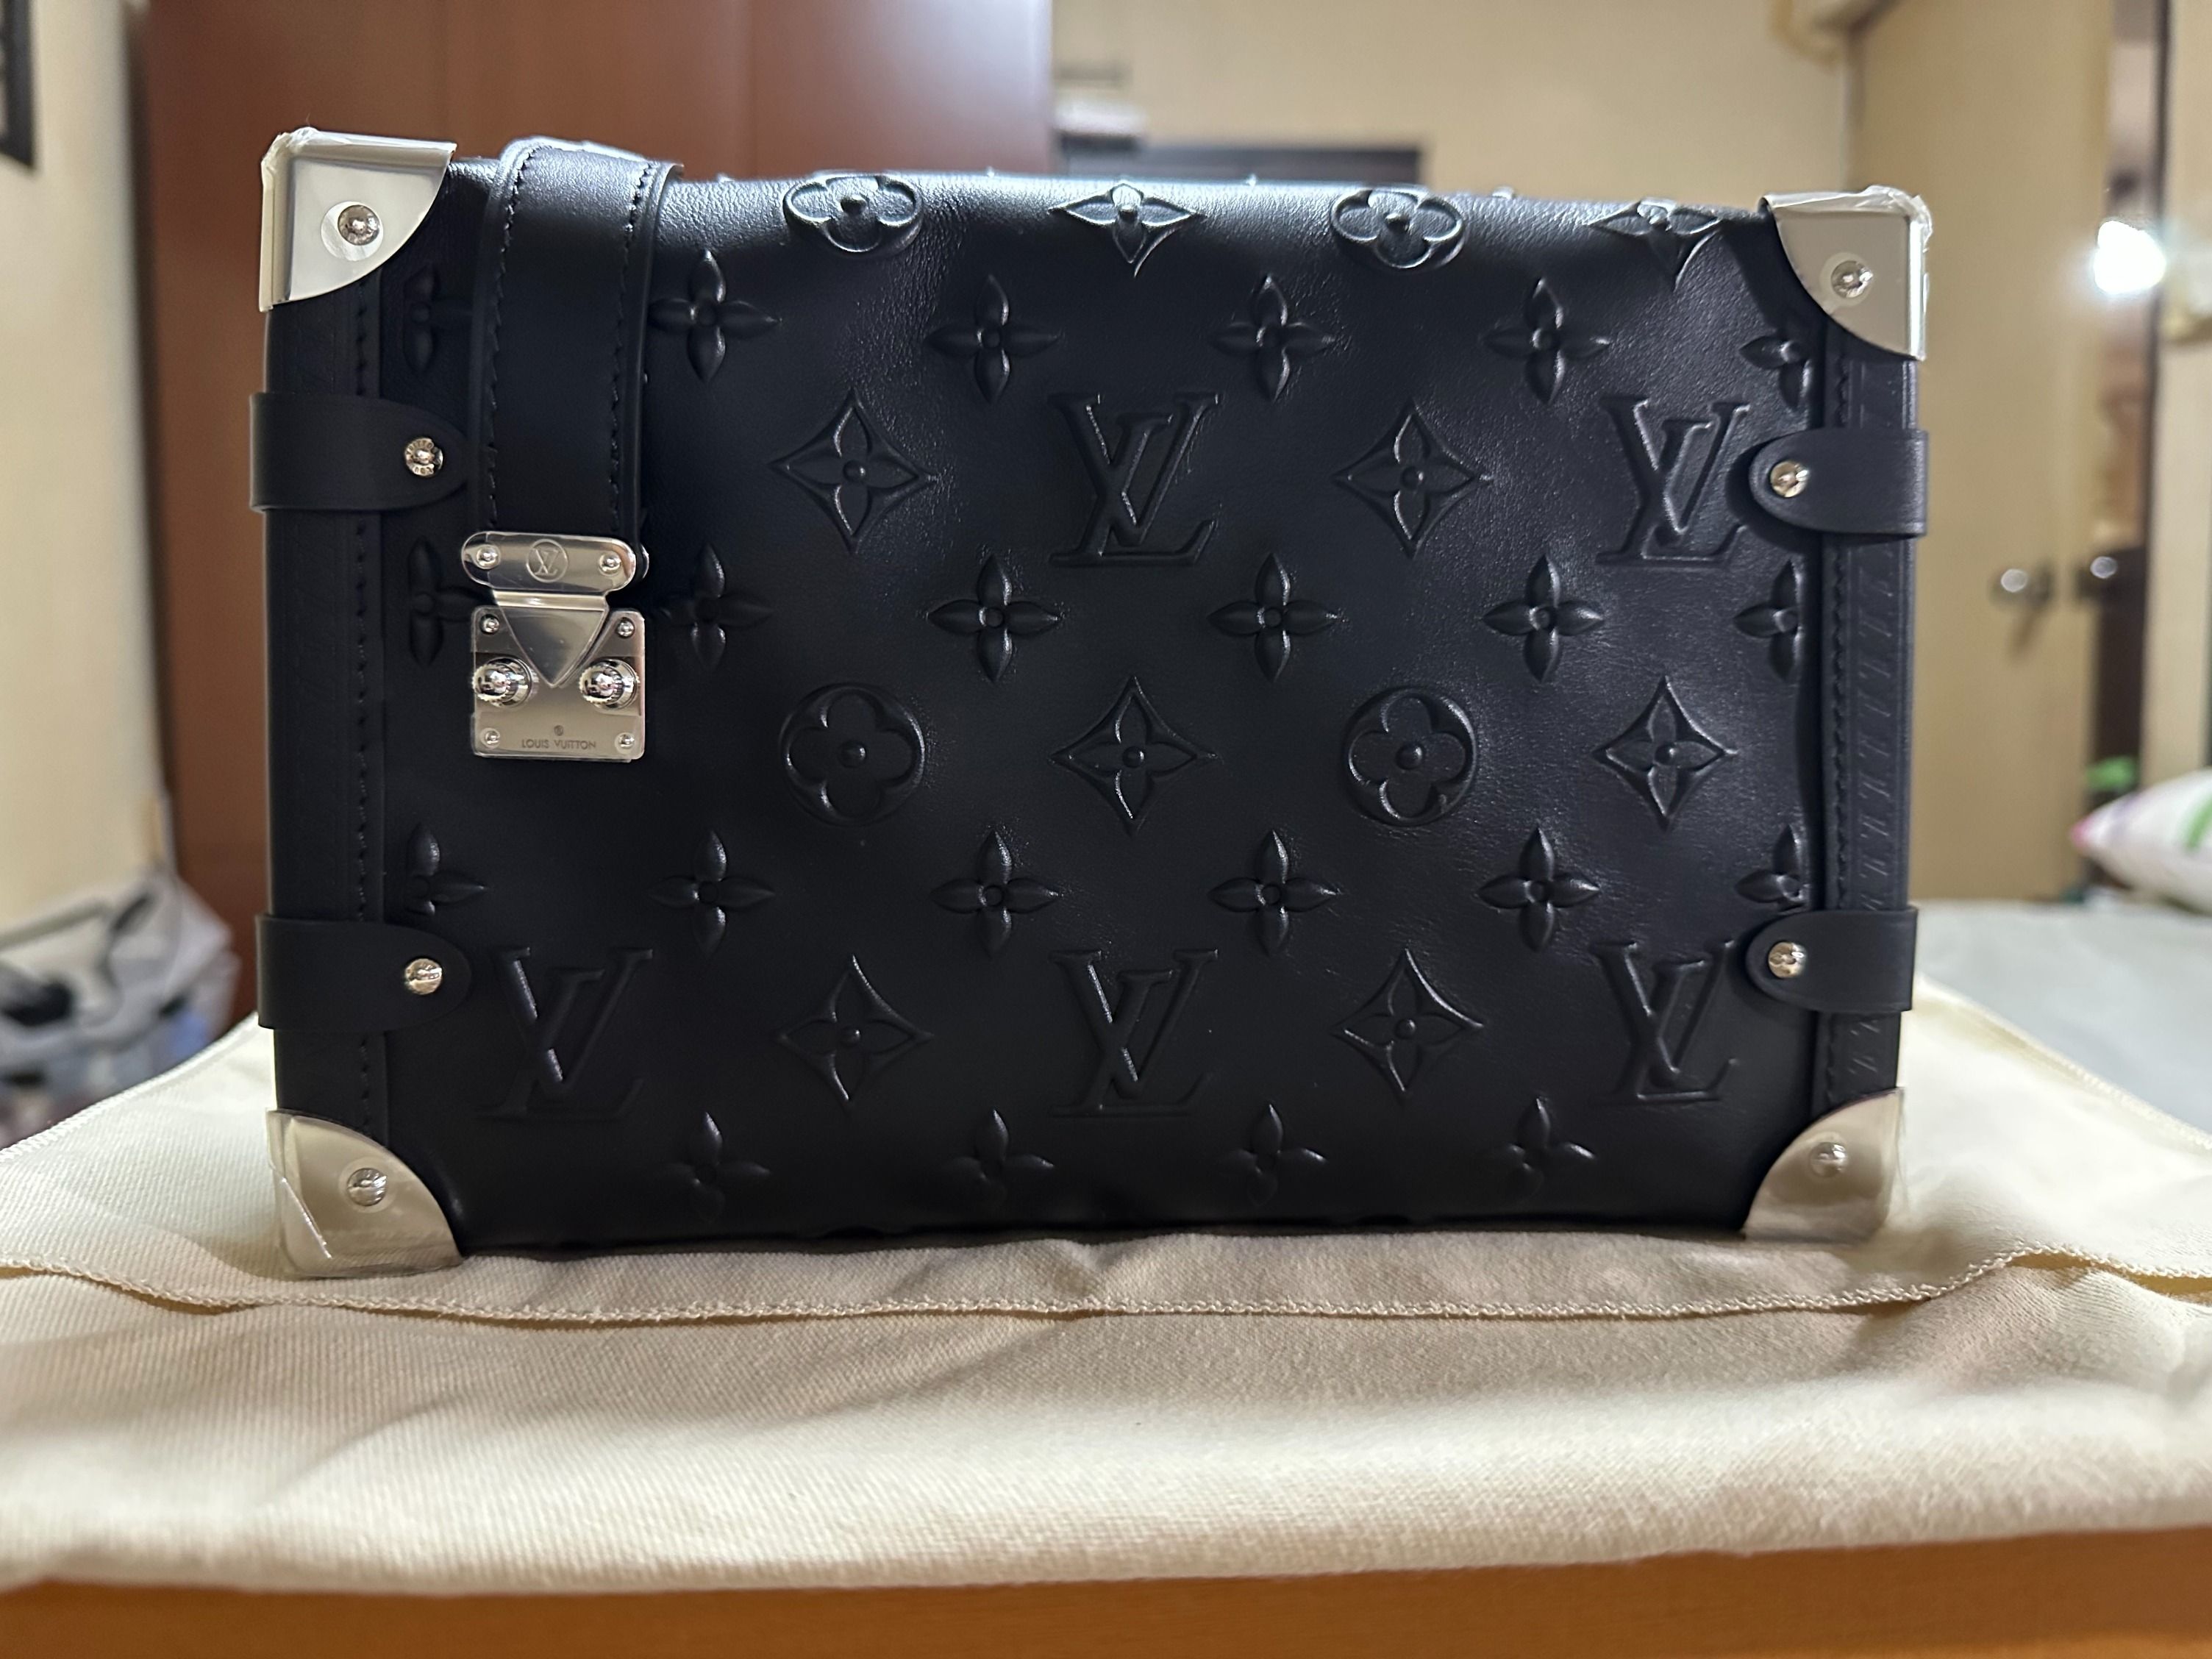 Louis Vuitton Side Trunk H27 - Handbags, Luxury, Bags & Wallets on